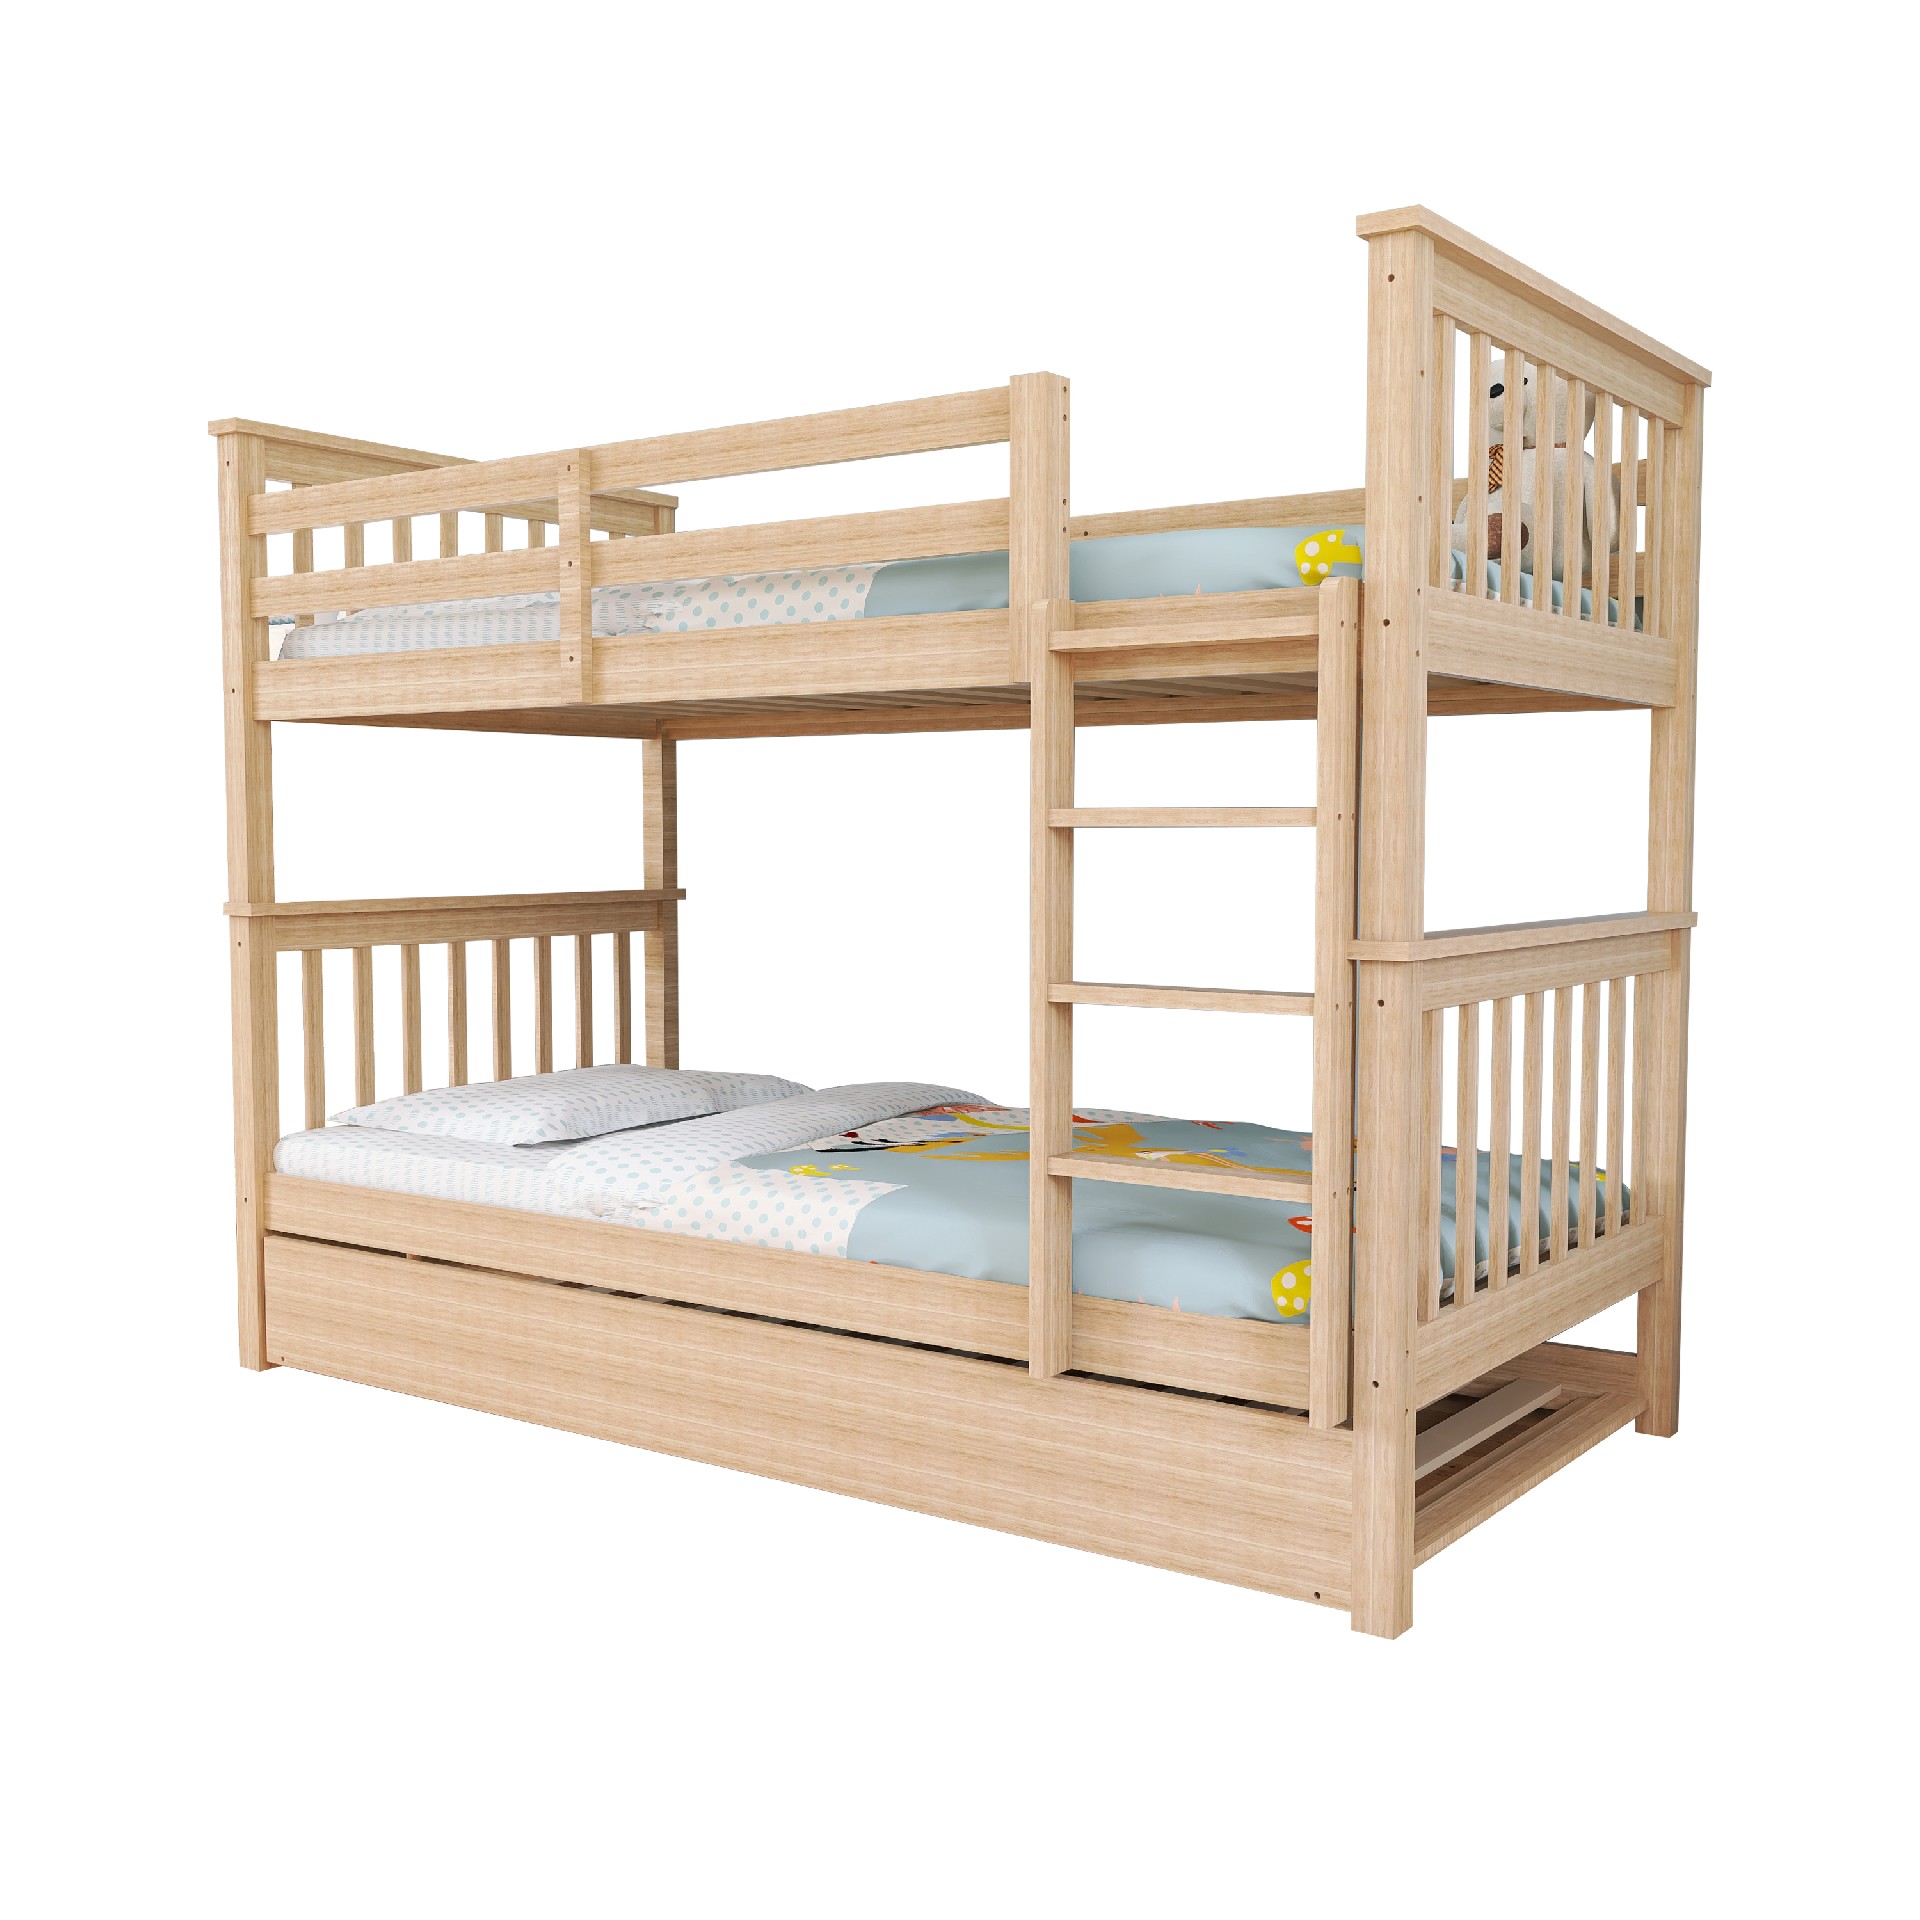 Children's Wooden bunk bed